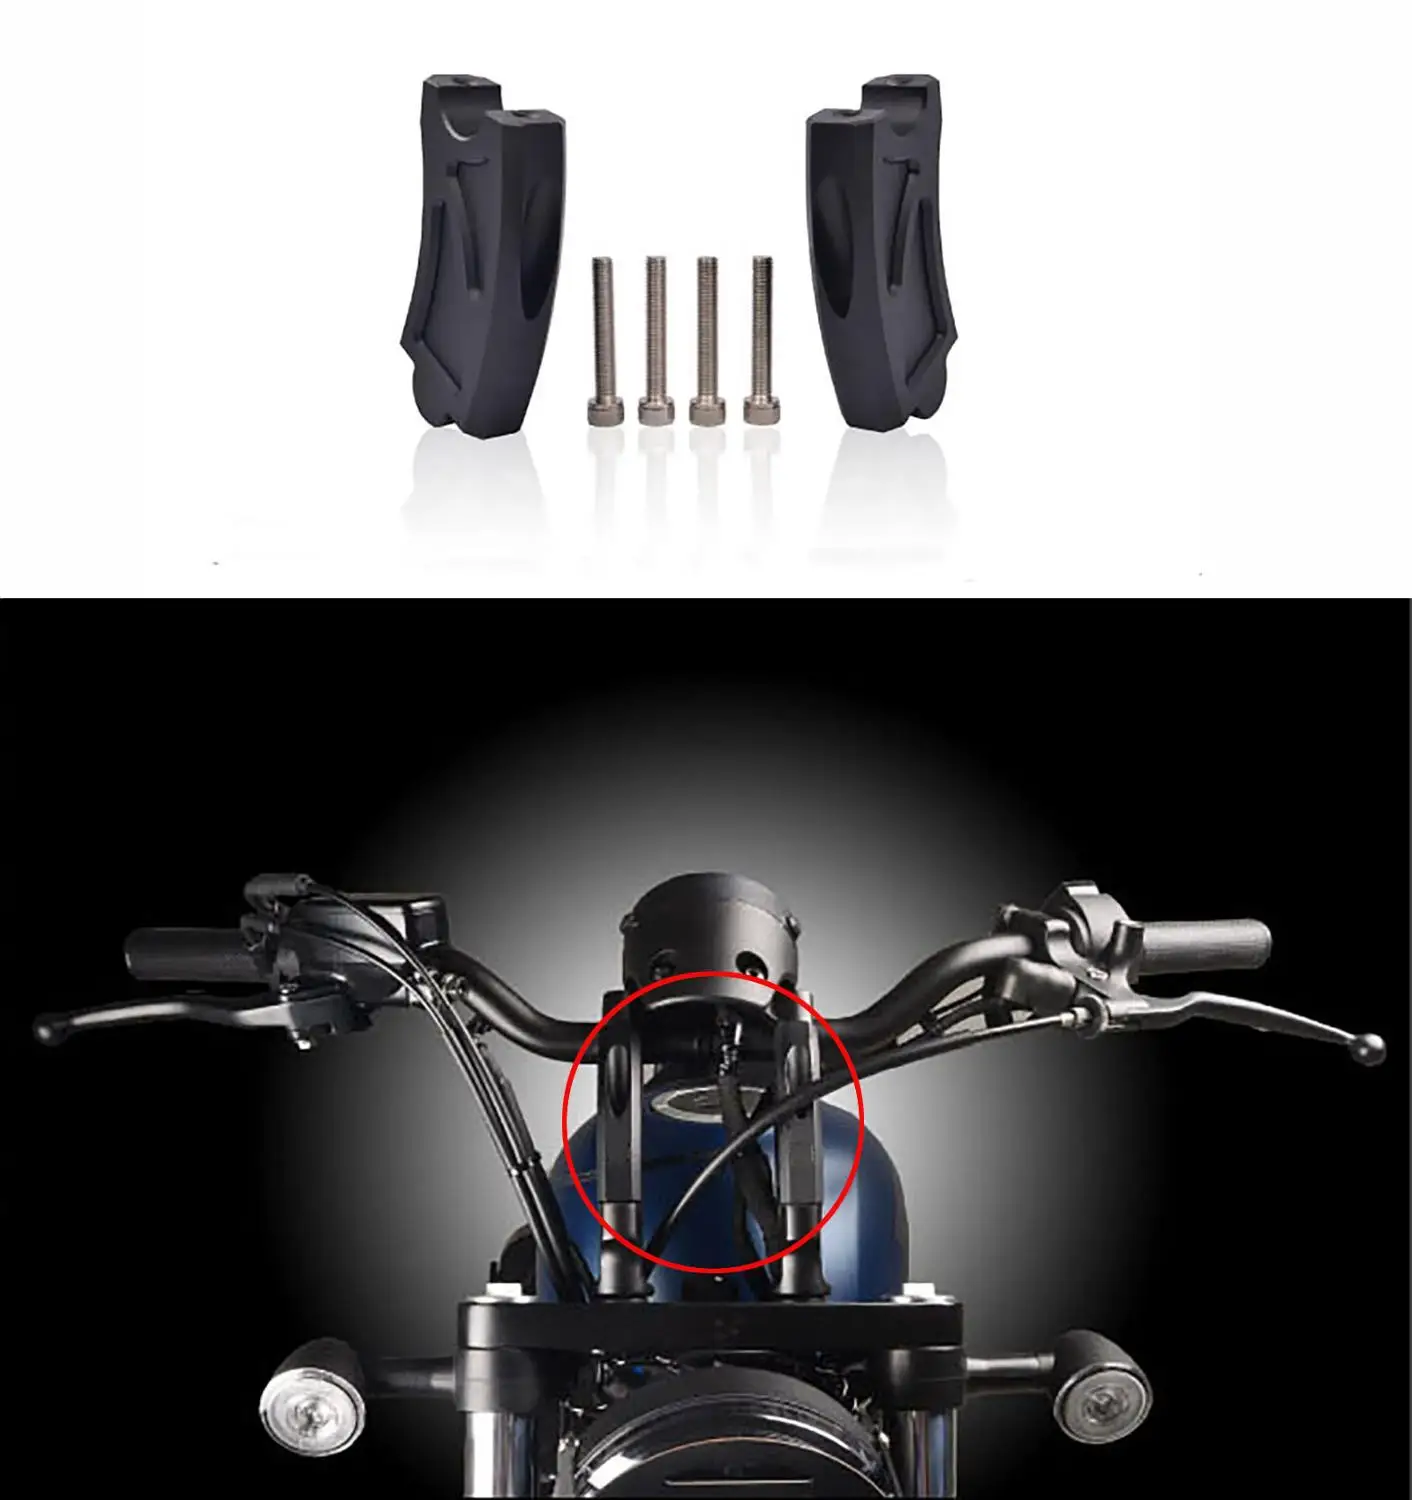 Mtkracing motociklų dalys vairo stovo adapteriu honda cmx500 rebel500 SUKILĖLIŲ 500 cmx300 cmx 300 500 2020 rankenos atgal